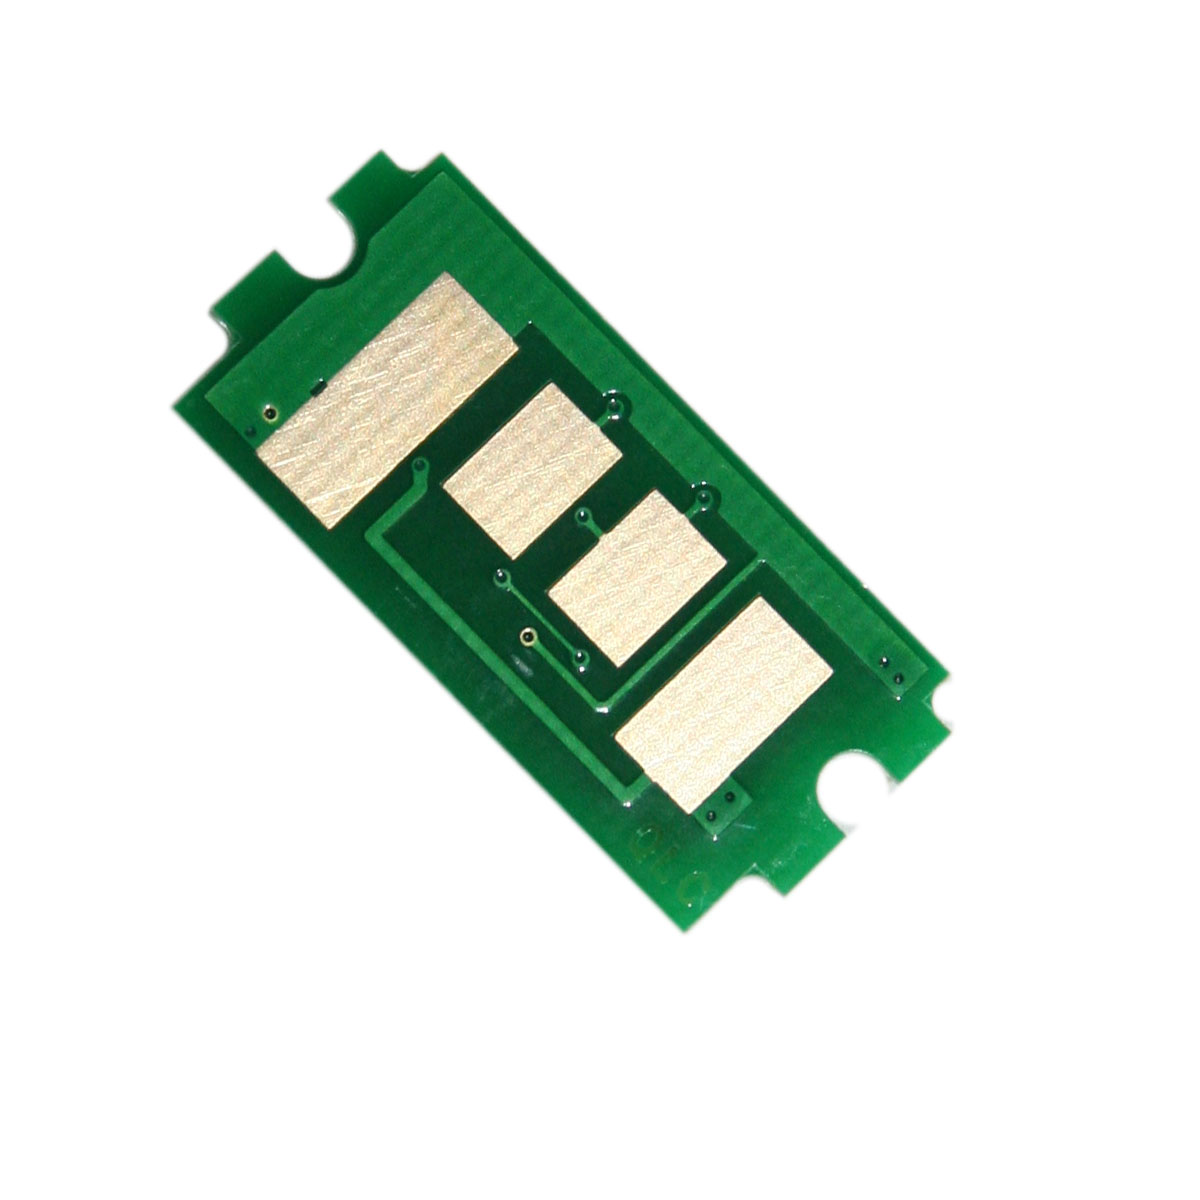 Chip zliczający Kyocera-Mita FS 4300